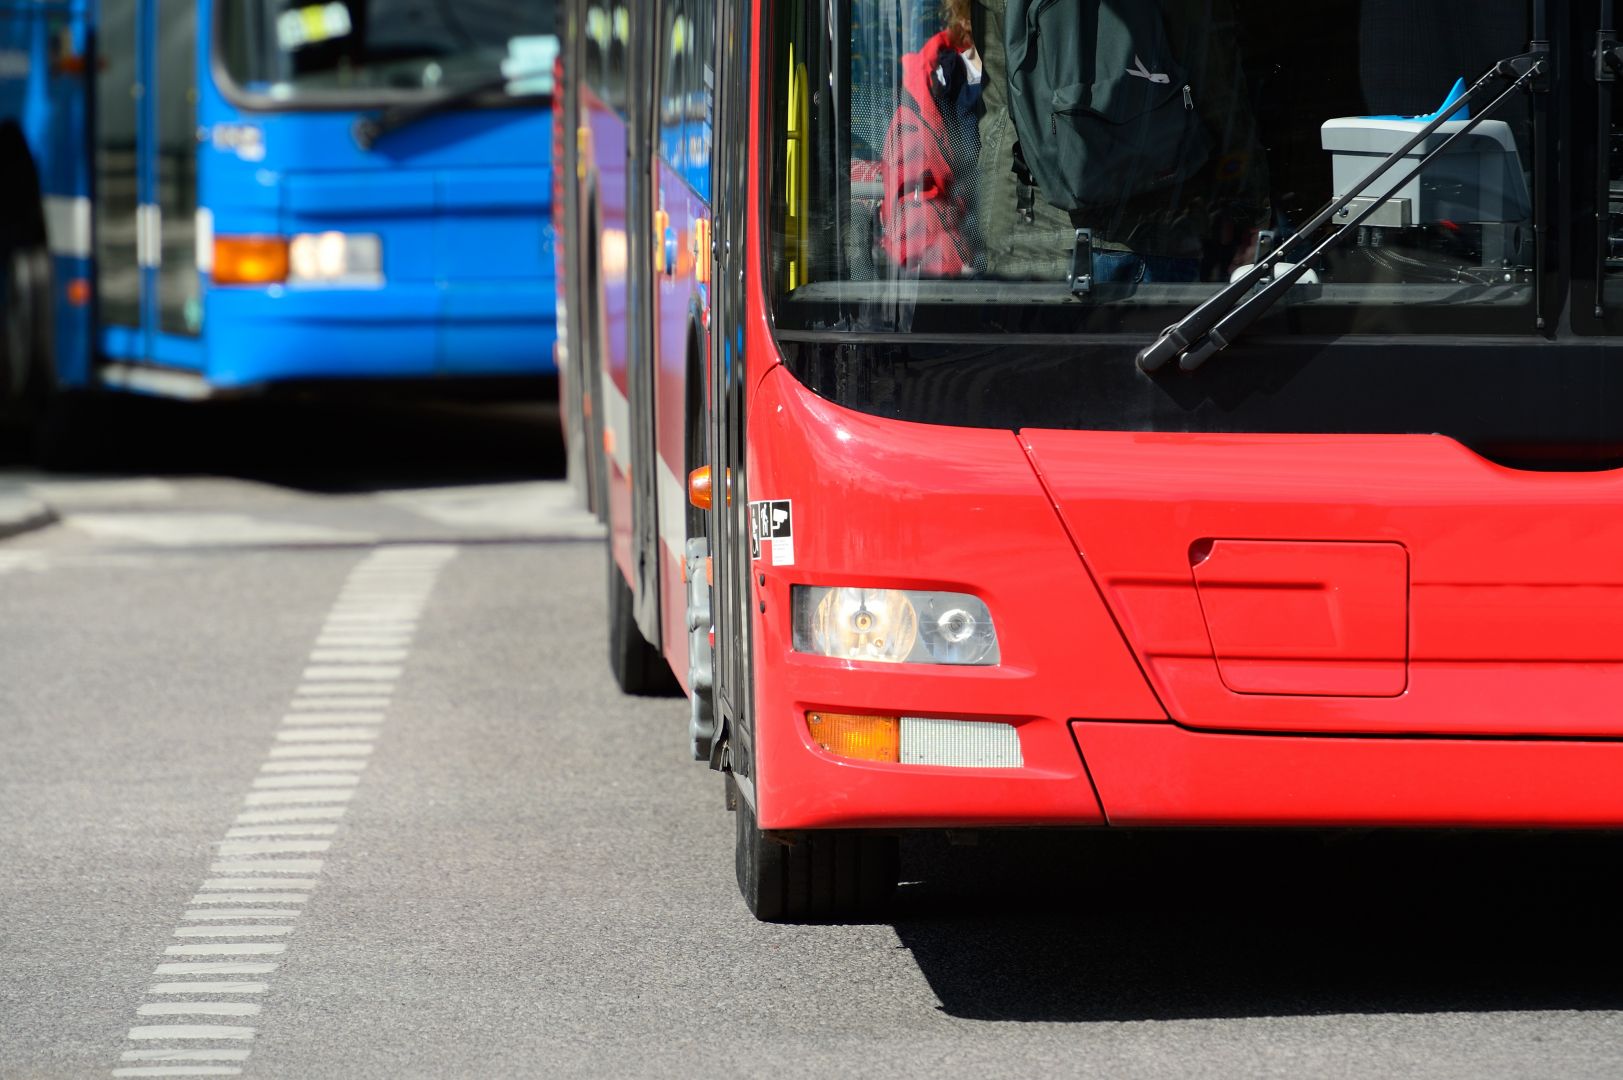 Zajištění náhradní autobusové dopravy